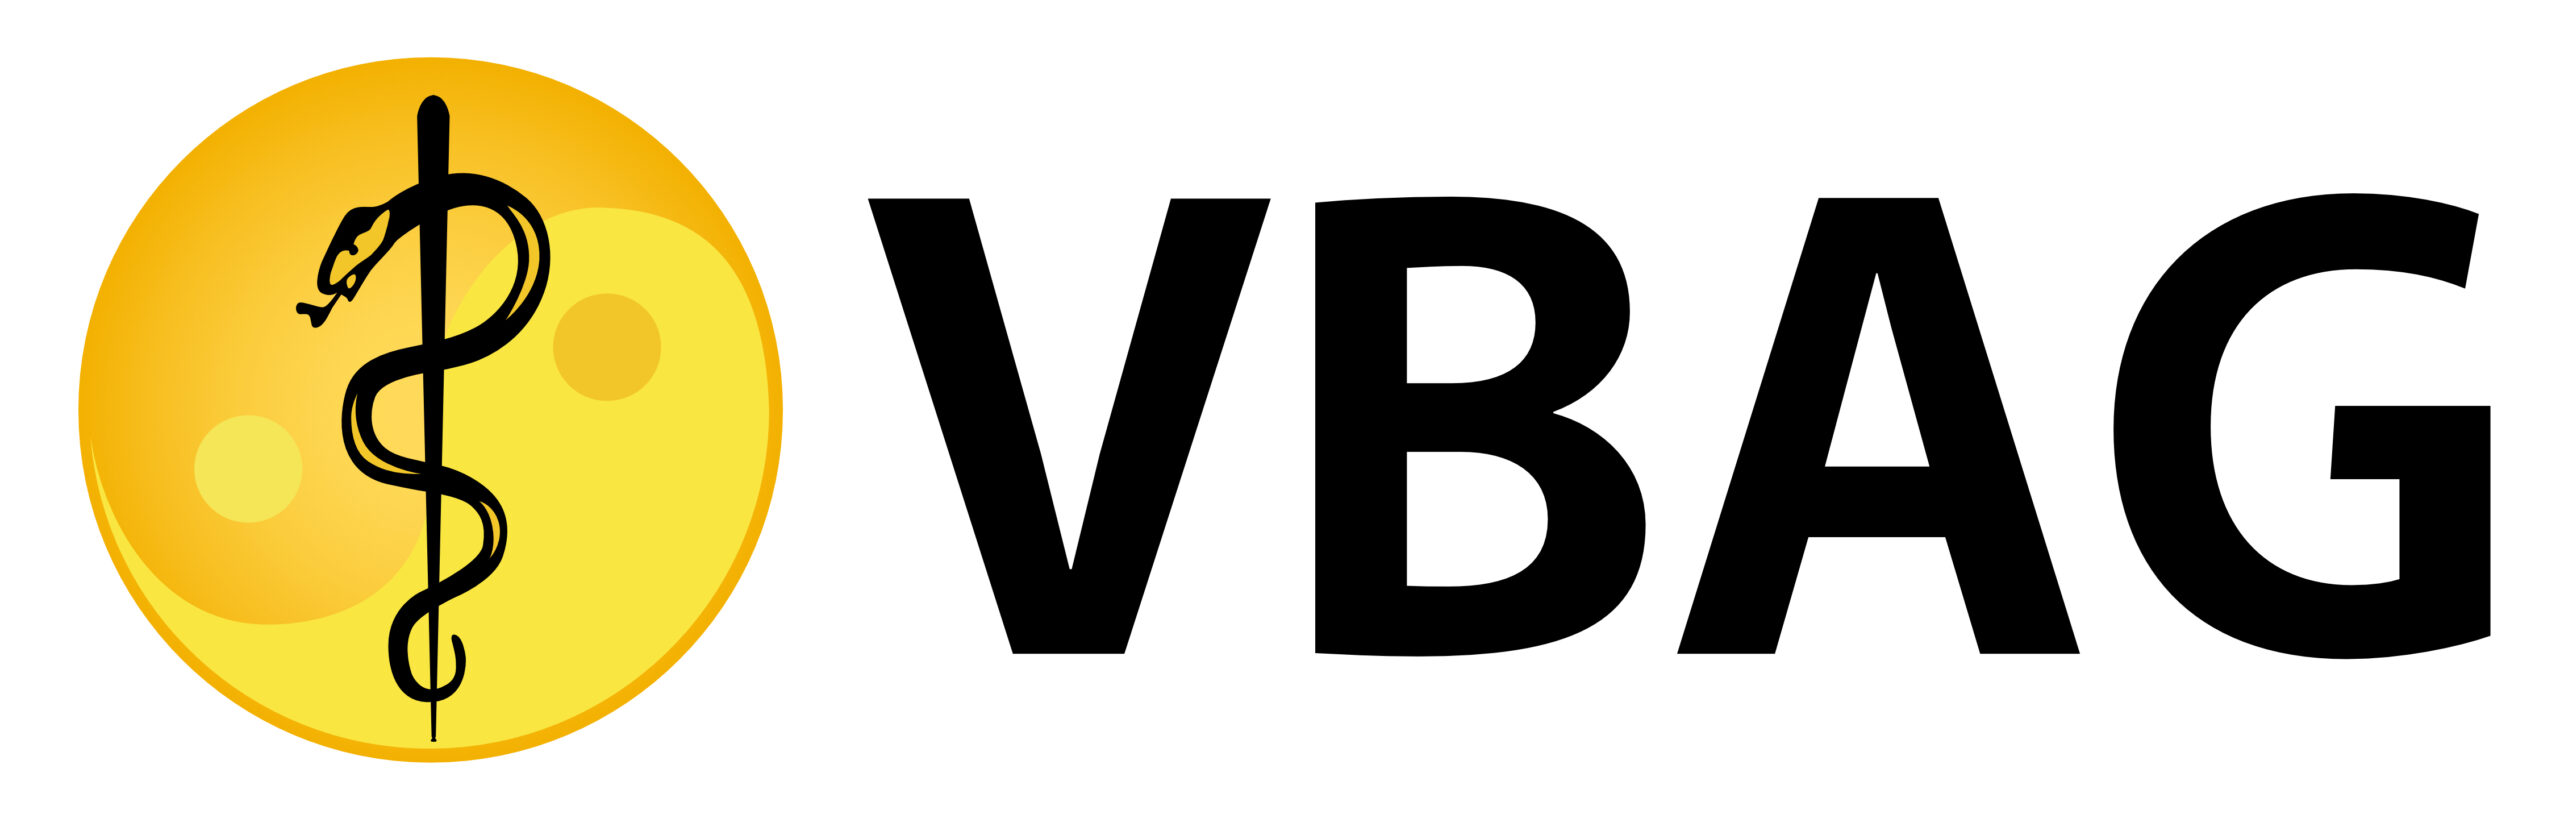 vbag logo